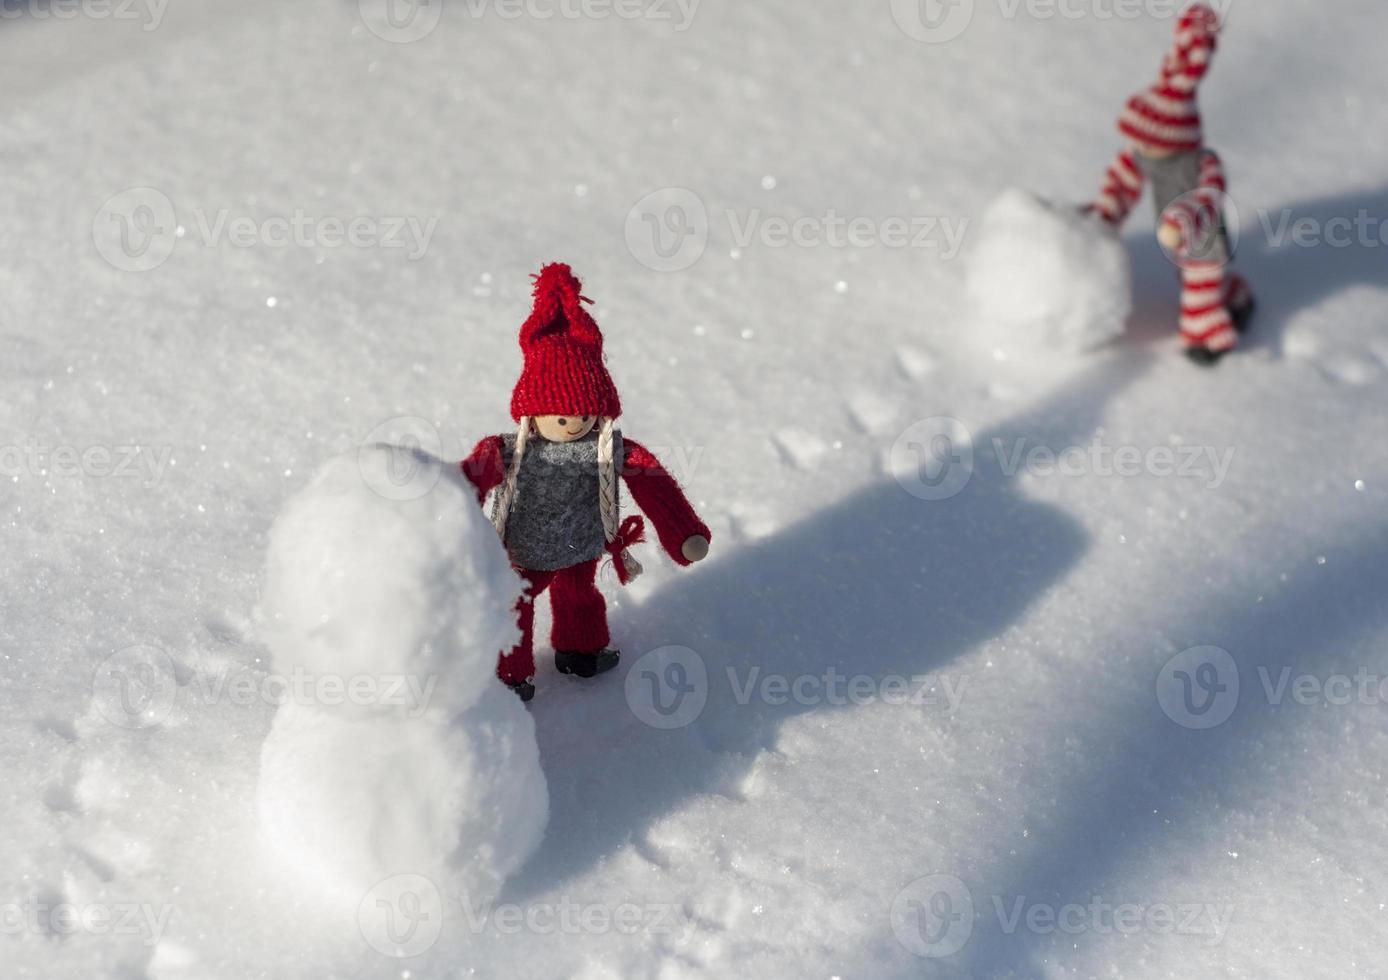 deux petits hommes jouets jouant dans la neige photo